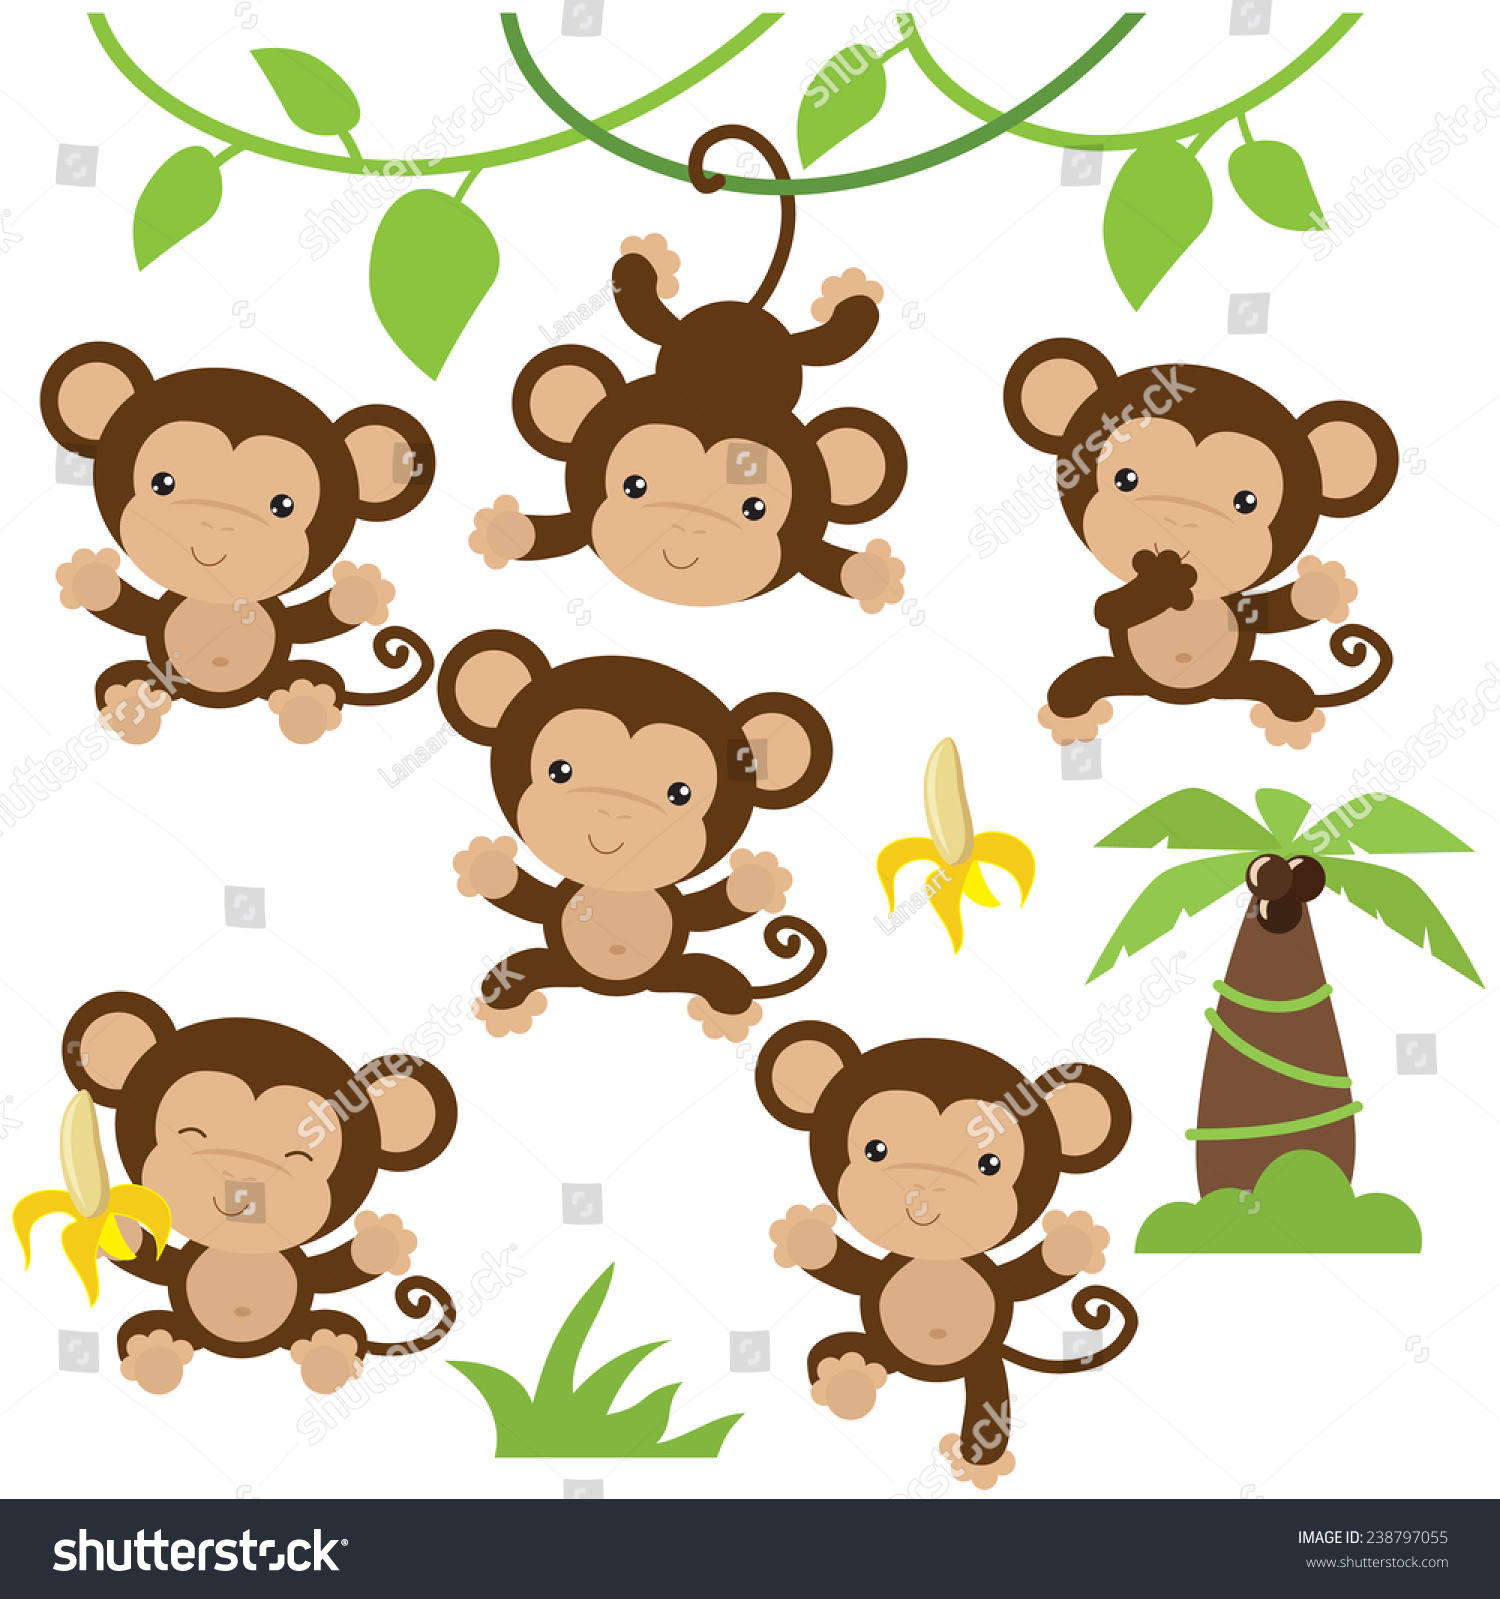 monkey clip art border - photo #33